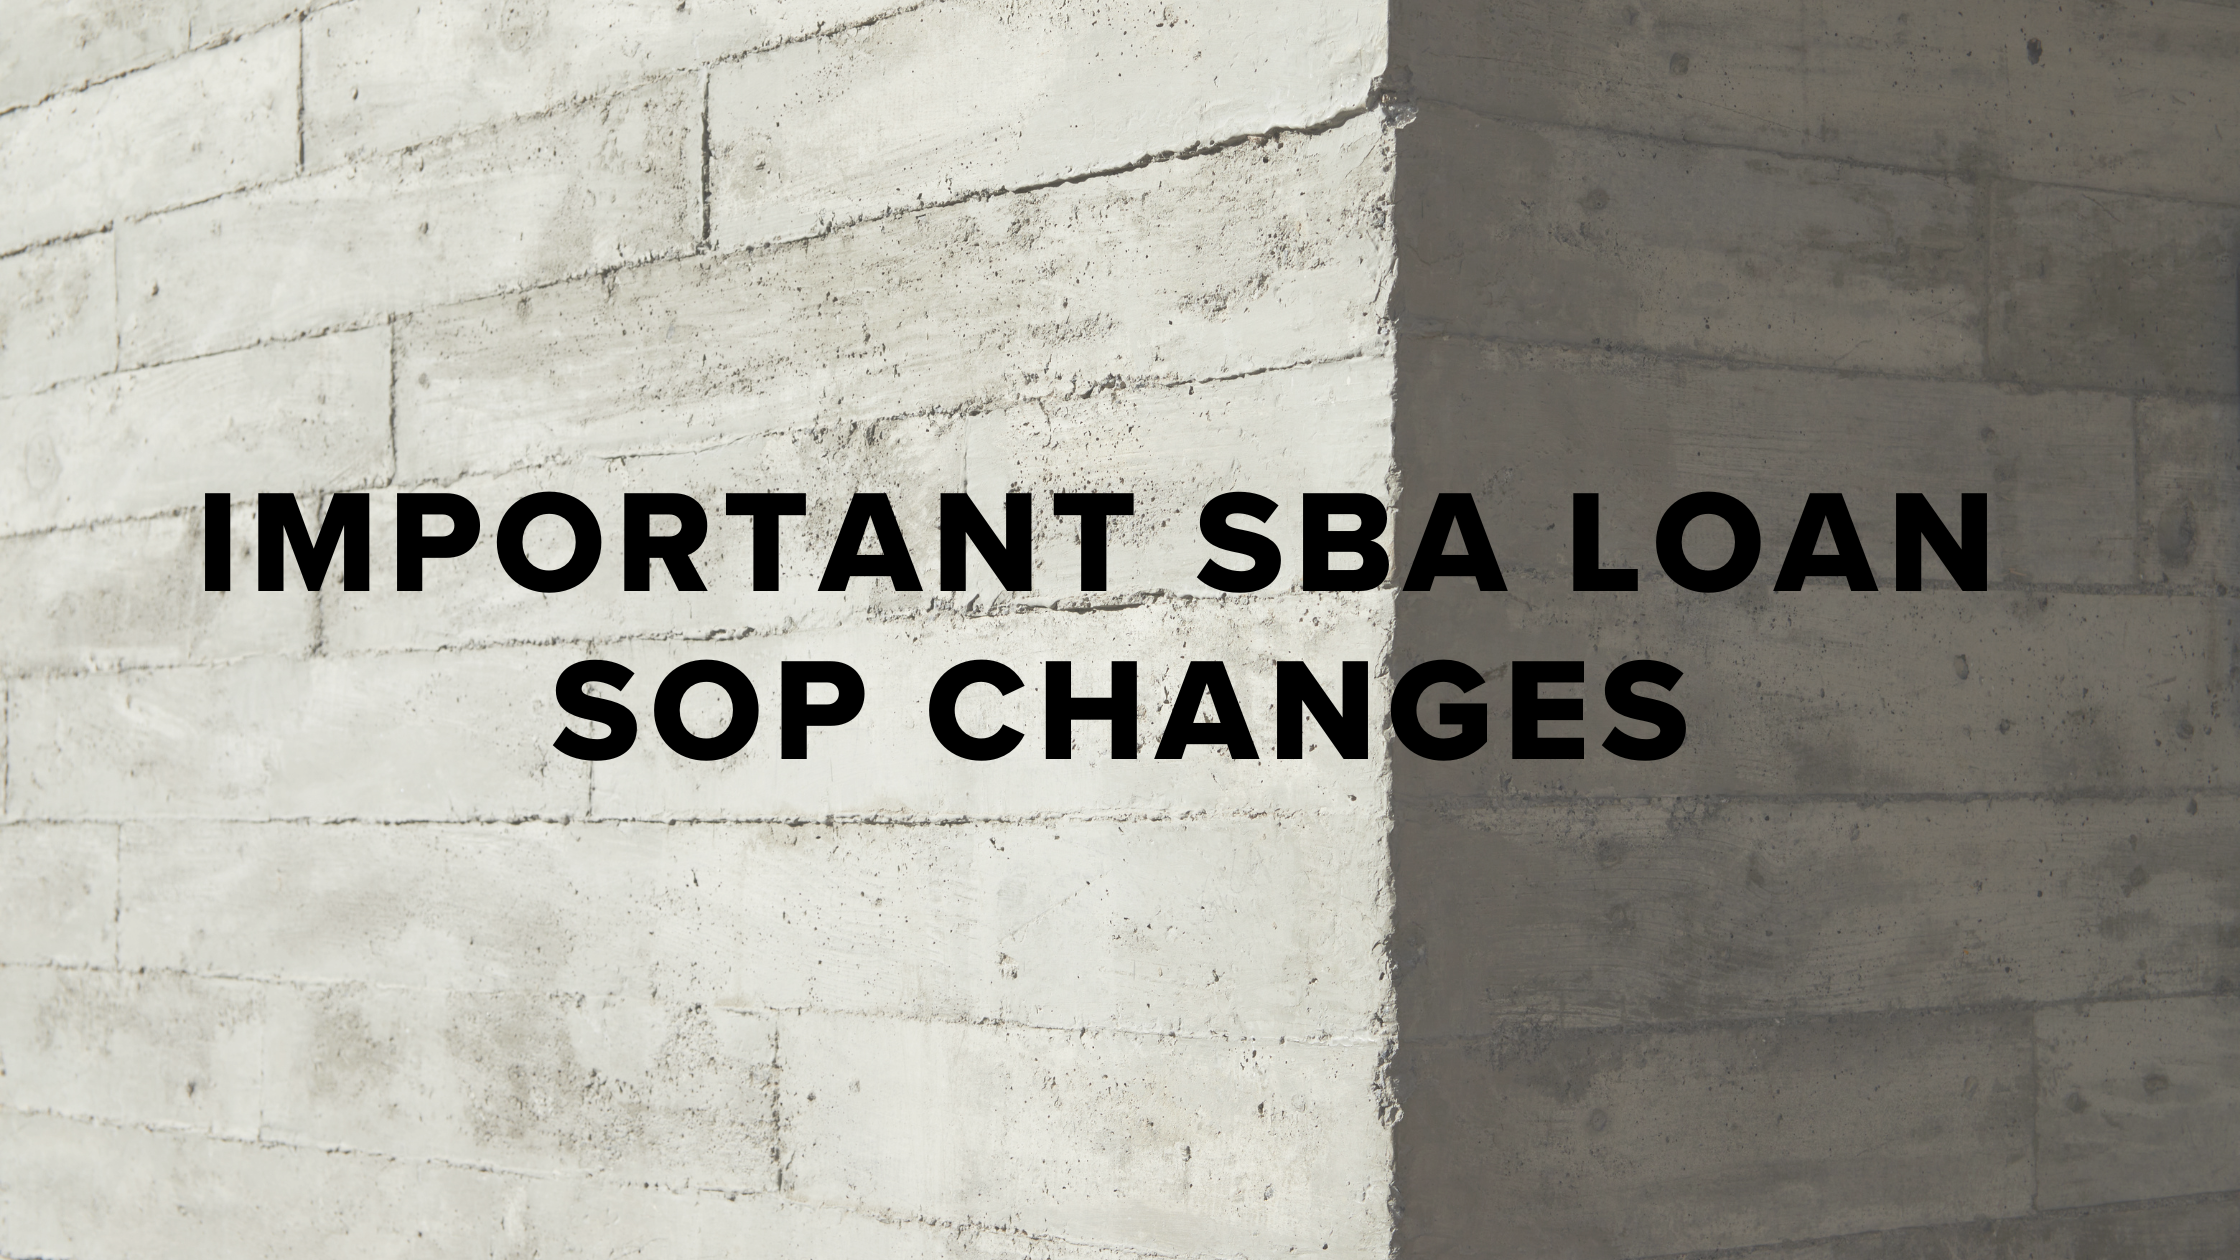 SBA SOP CHANGES